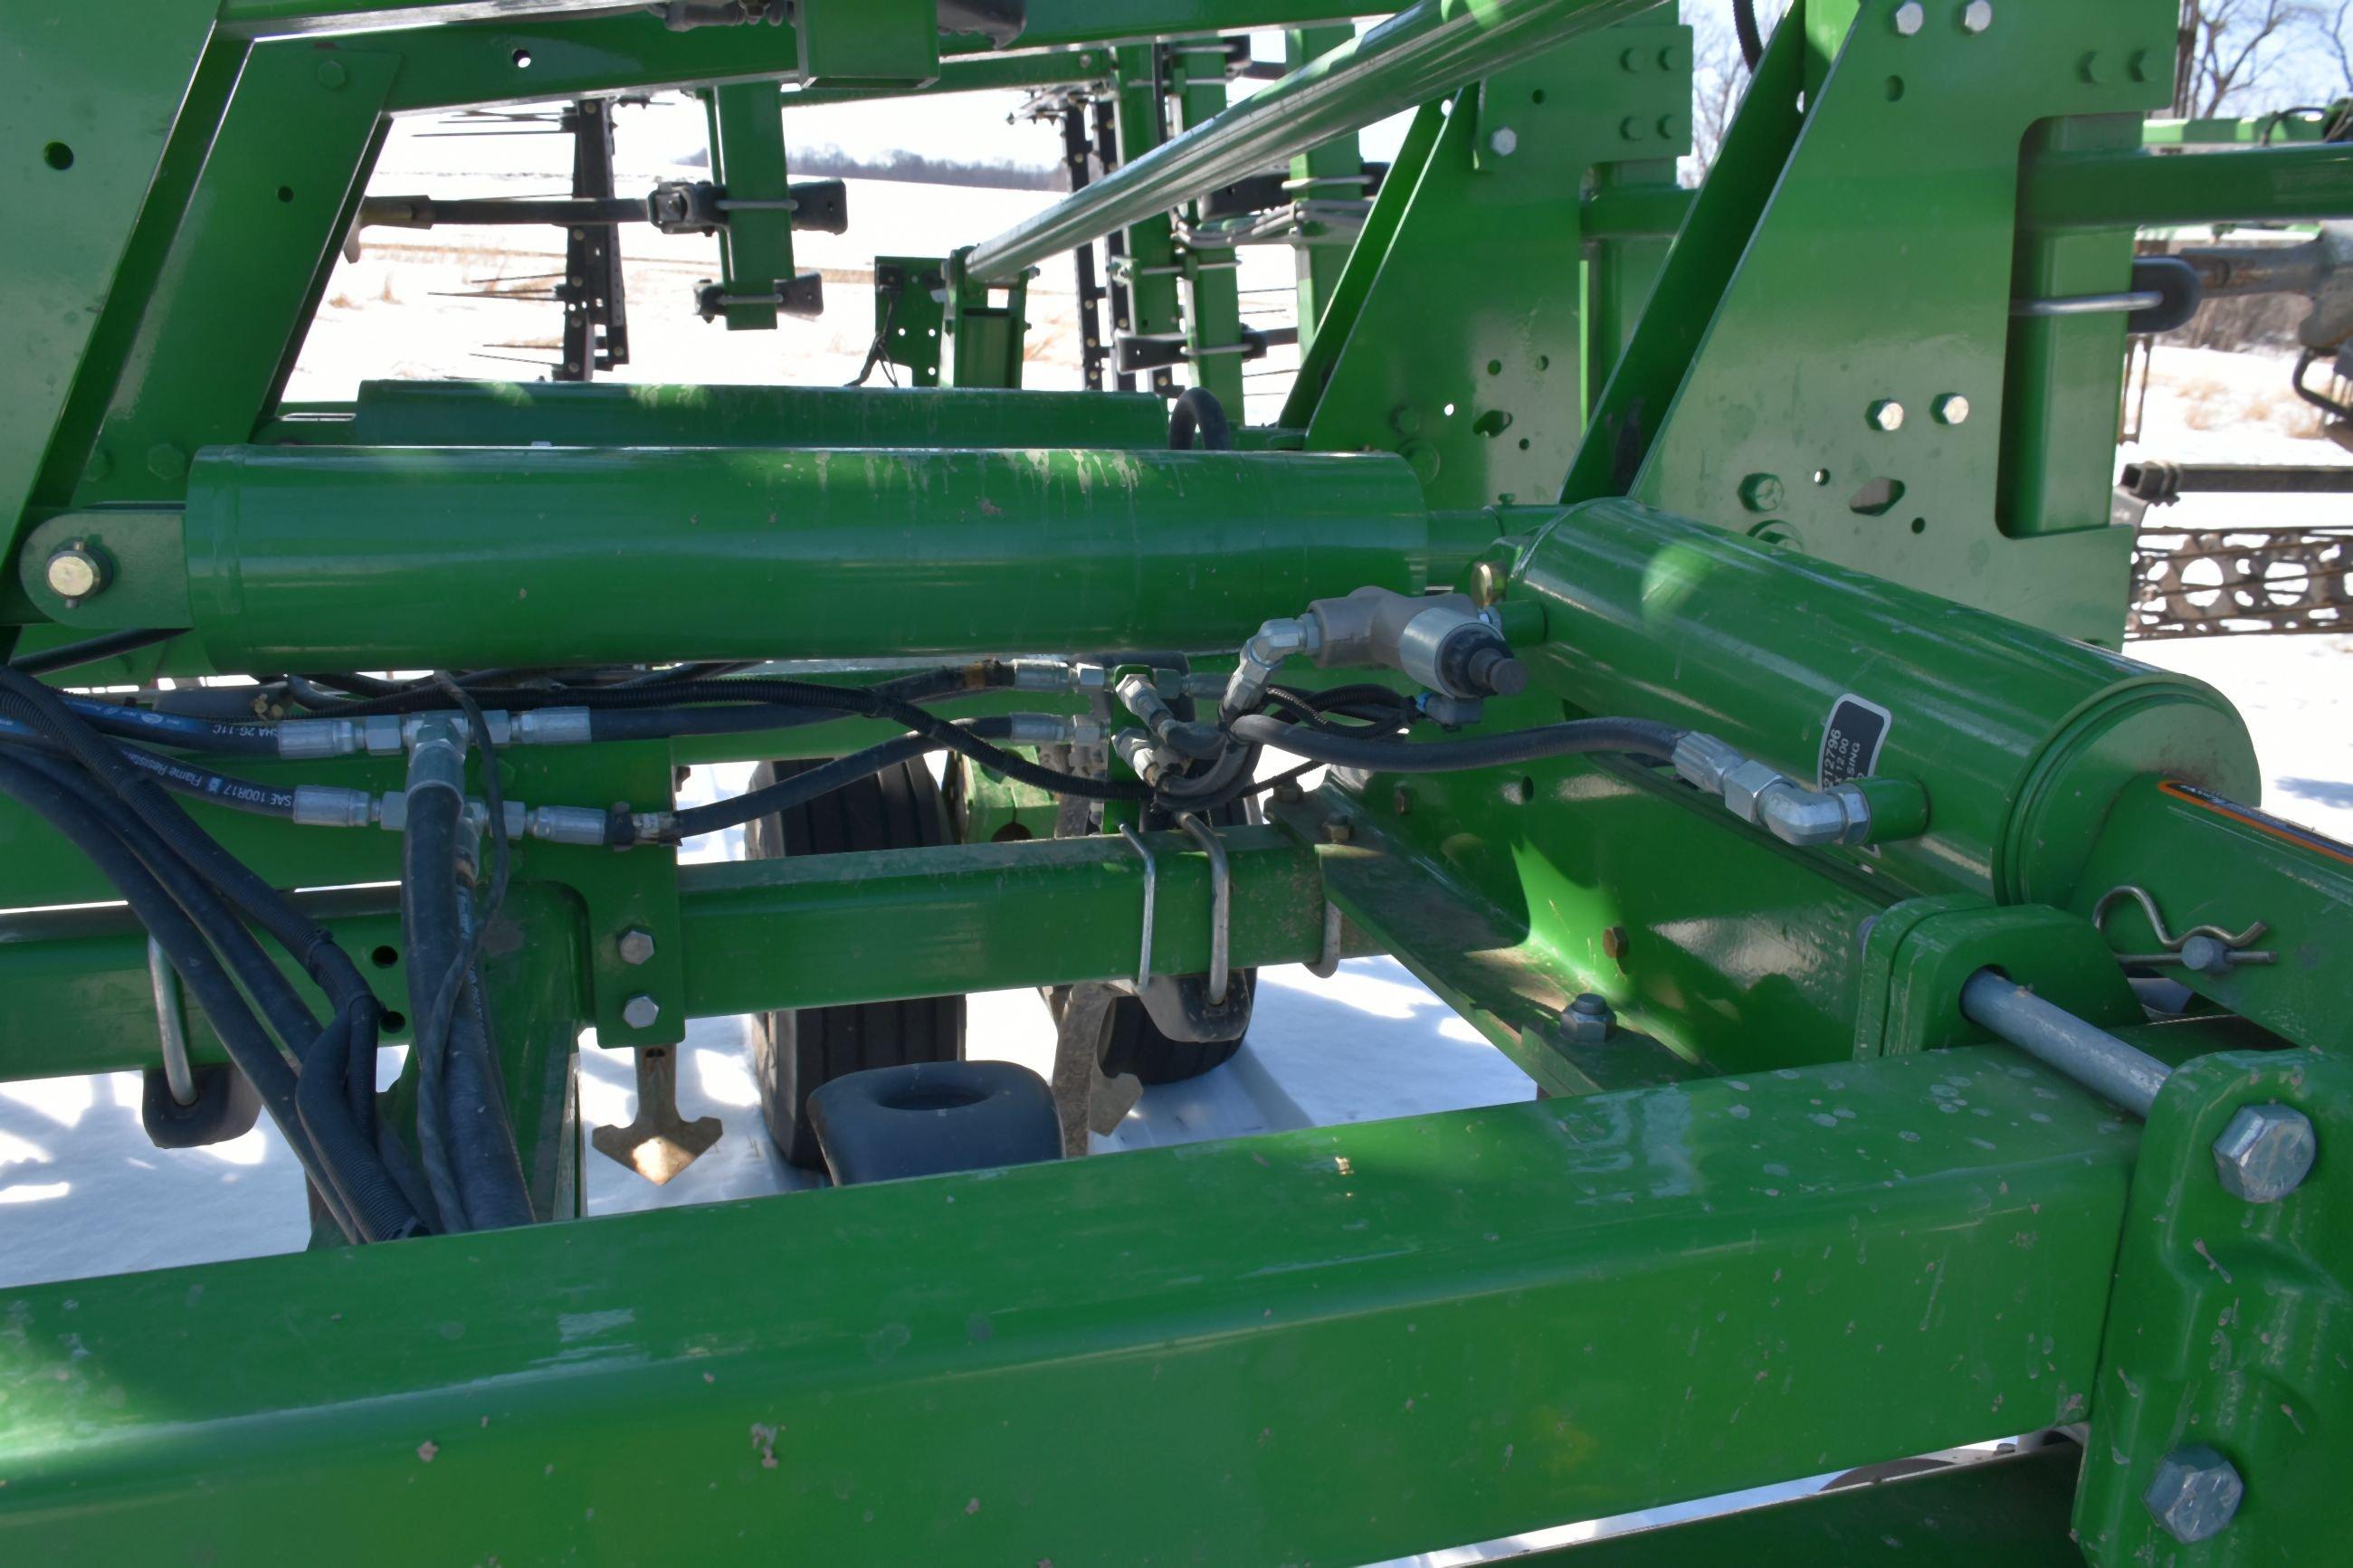 2013 John Deere 2210 Field Cultivator, 64.5’ 4 Bar Tine Harrow, 7.5” Sweeps 90%, Double Fold, Gauge